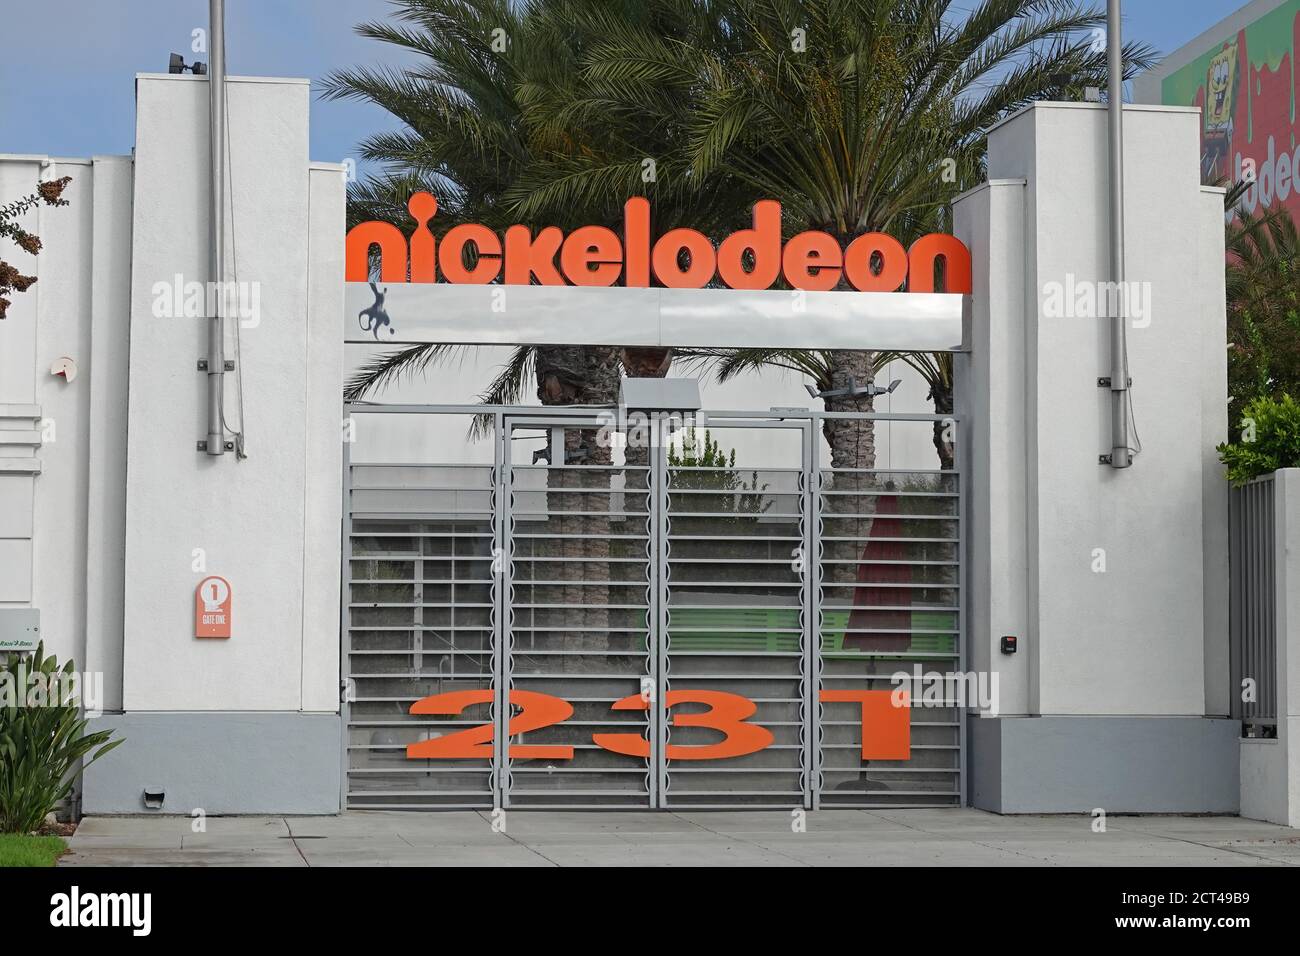 Burbank, CA / USA - 30. August 2020: Der Vordereingang der Nickelodeon Animation Studios wird an einem Sommertag gezeigt. Nur für redaktionelle Zwecke. Stockfoto